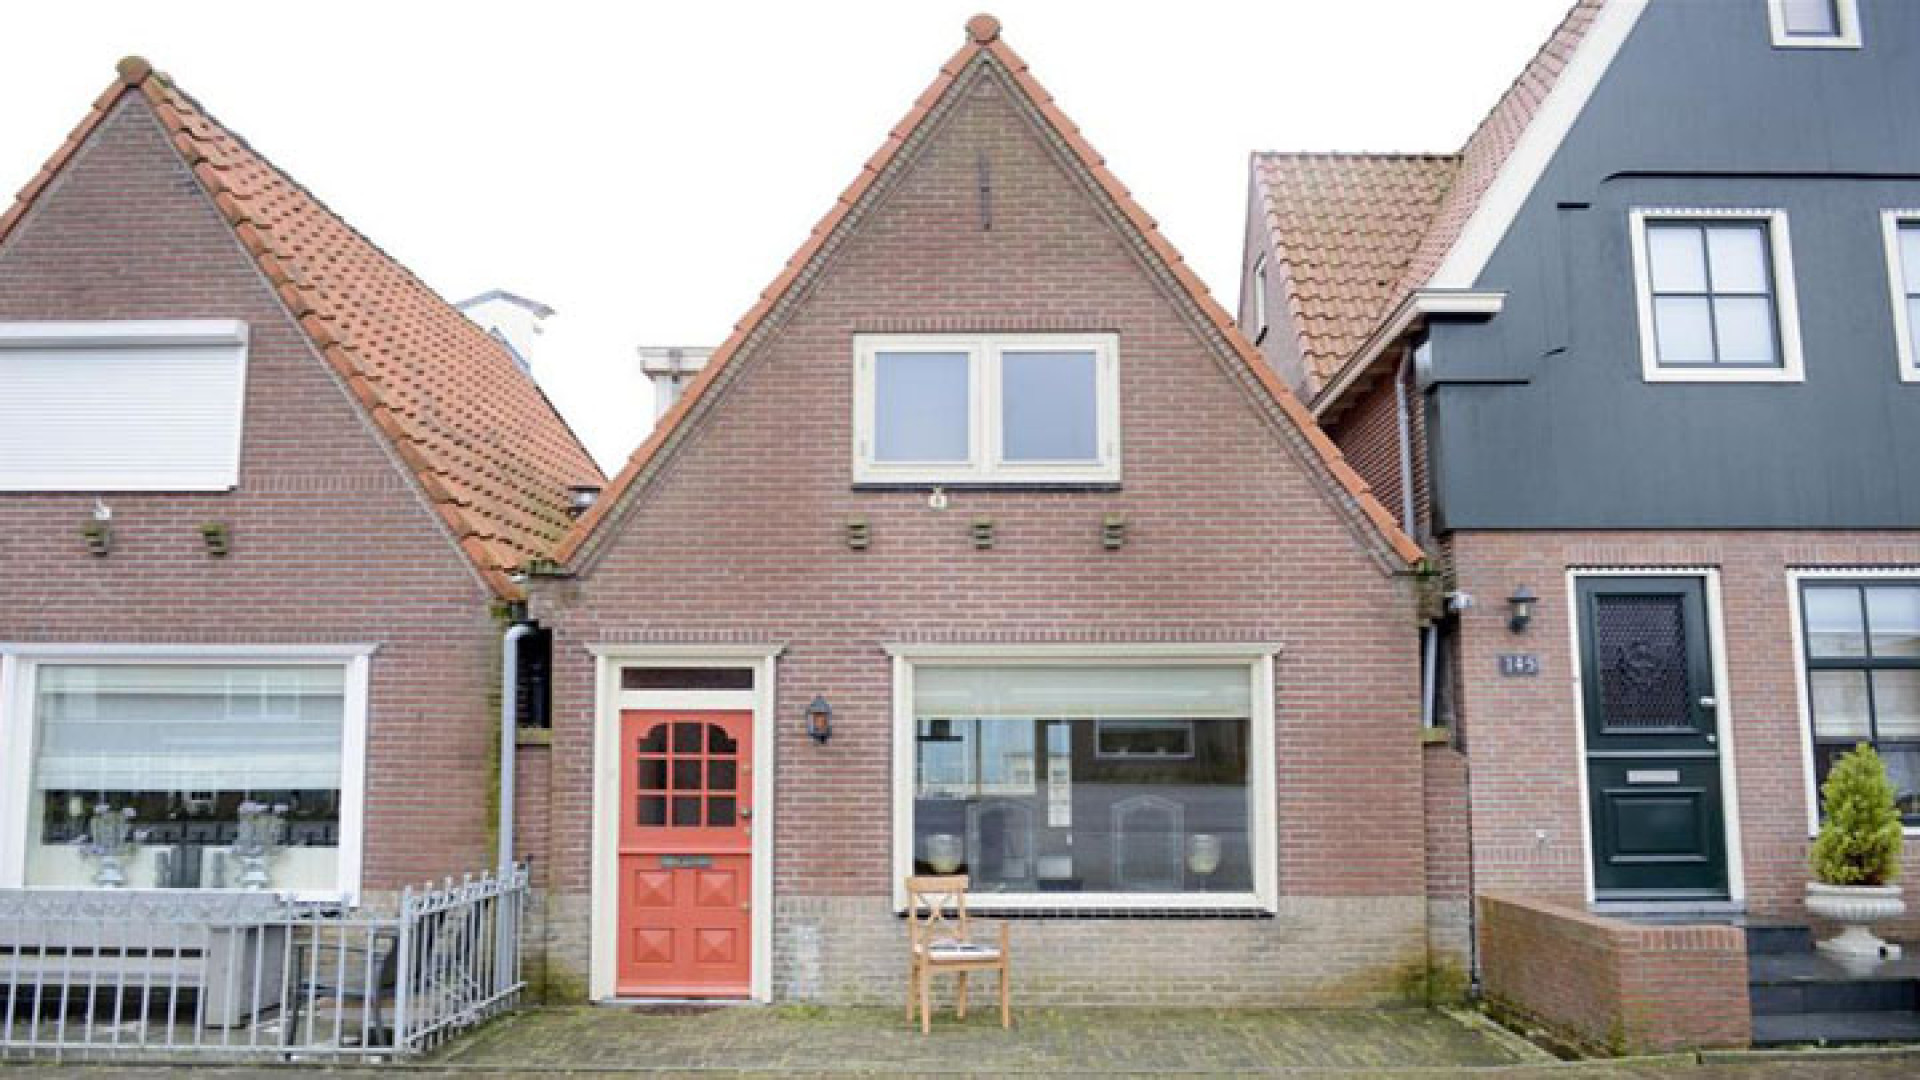 Huis Yolanthe in Volendam eindelijk verkocht. Zie foto's